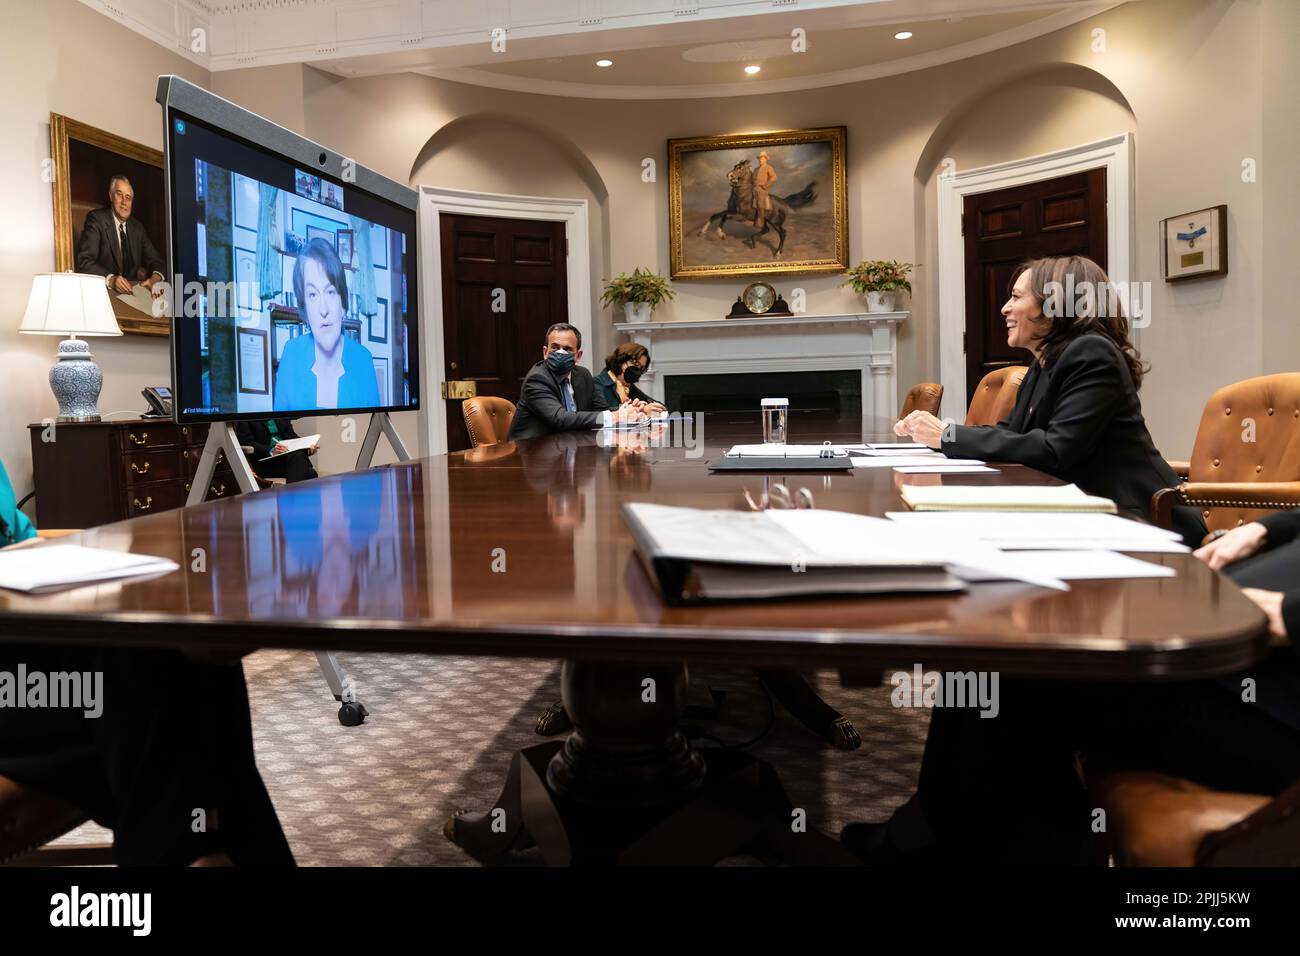 Il Vice Presidente Kamala Harris partecipa a un incontro bilaterale virtuale con il primo Ministro dell'Irlanda del Nord Arlene Foster mercoledì 17 marzo 2021 nella Sala Roosevelt della Casa Bianca. (Foto ufficiale della Casa Bianca di Lawrence Jackson) Foto Stock